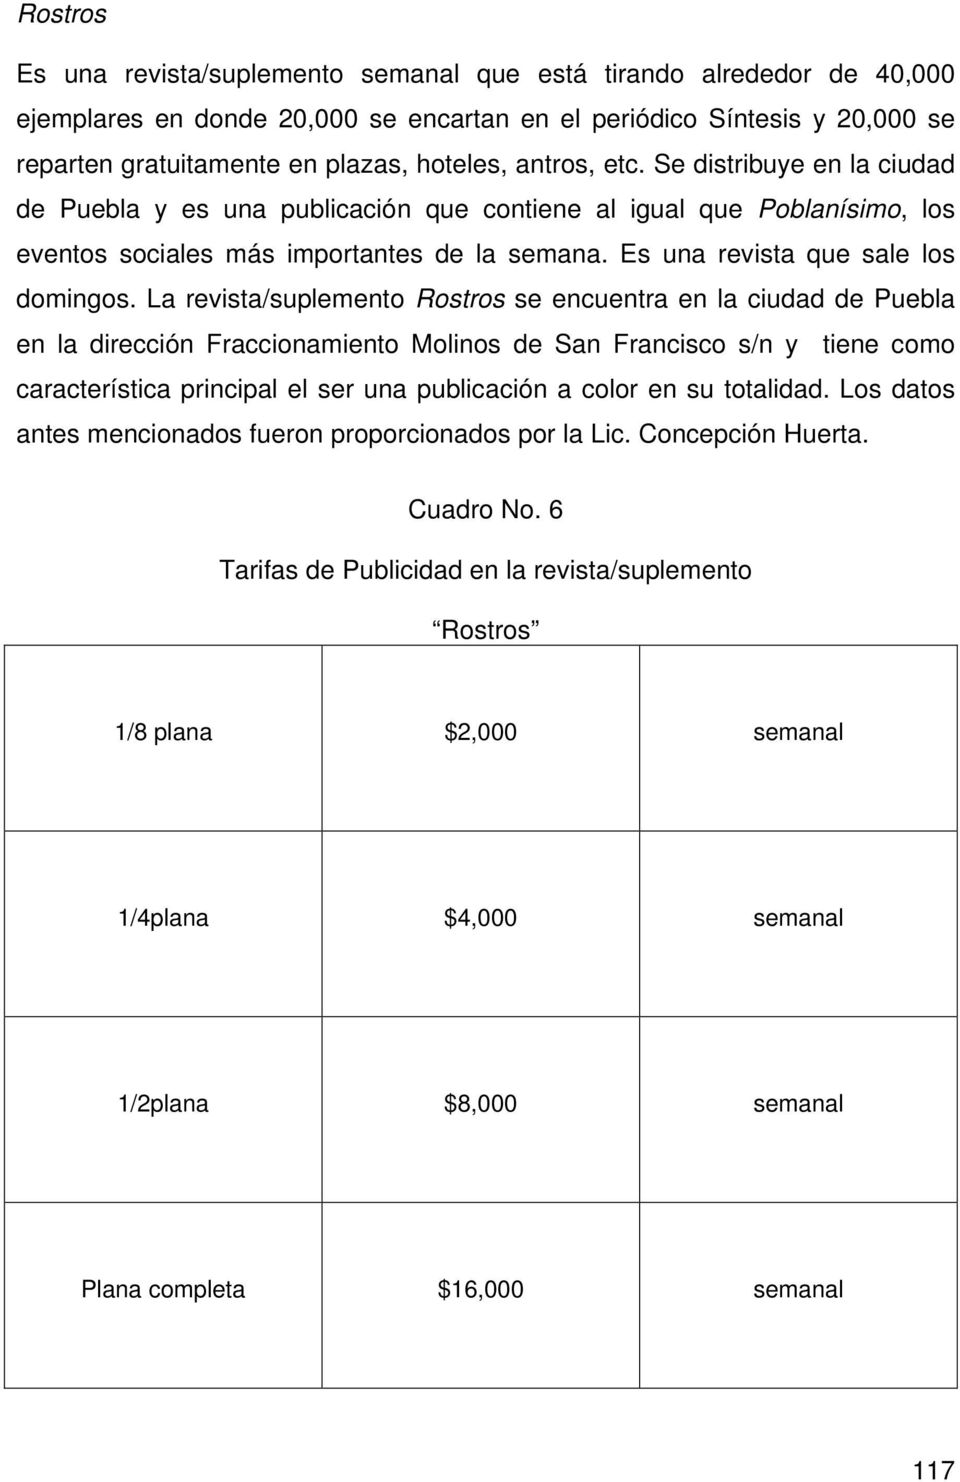 La revista/suplemento Rostros se encuentra en la ciudad de Puebla en la dirección Fraccionamiento Molinos de San Francisco s/n y tiene como característica principal el ser una publicación a color en